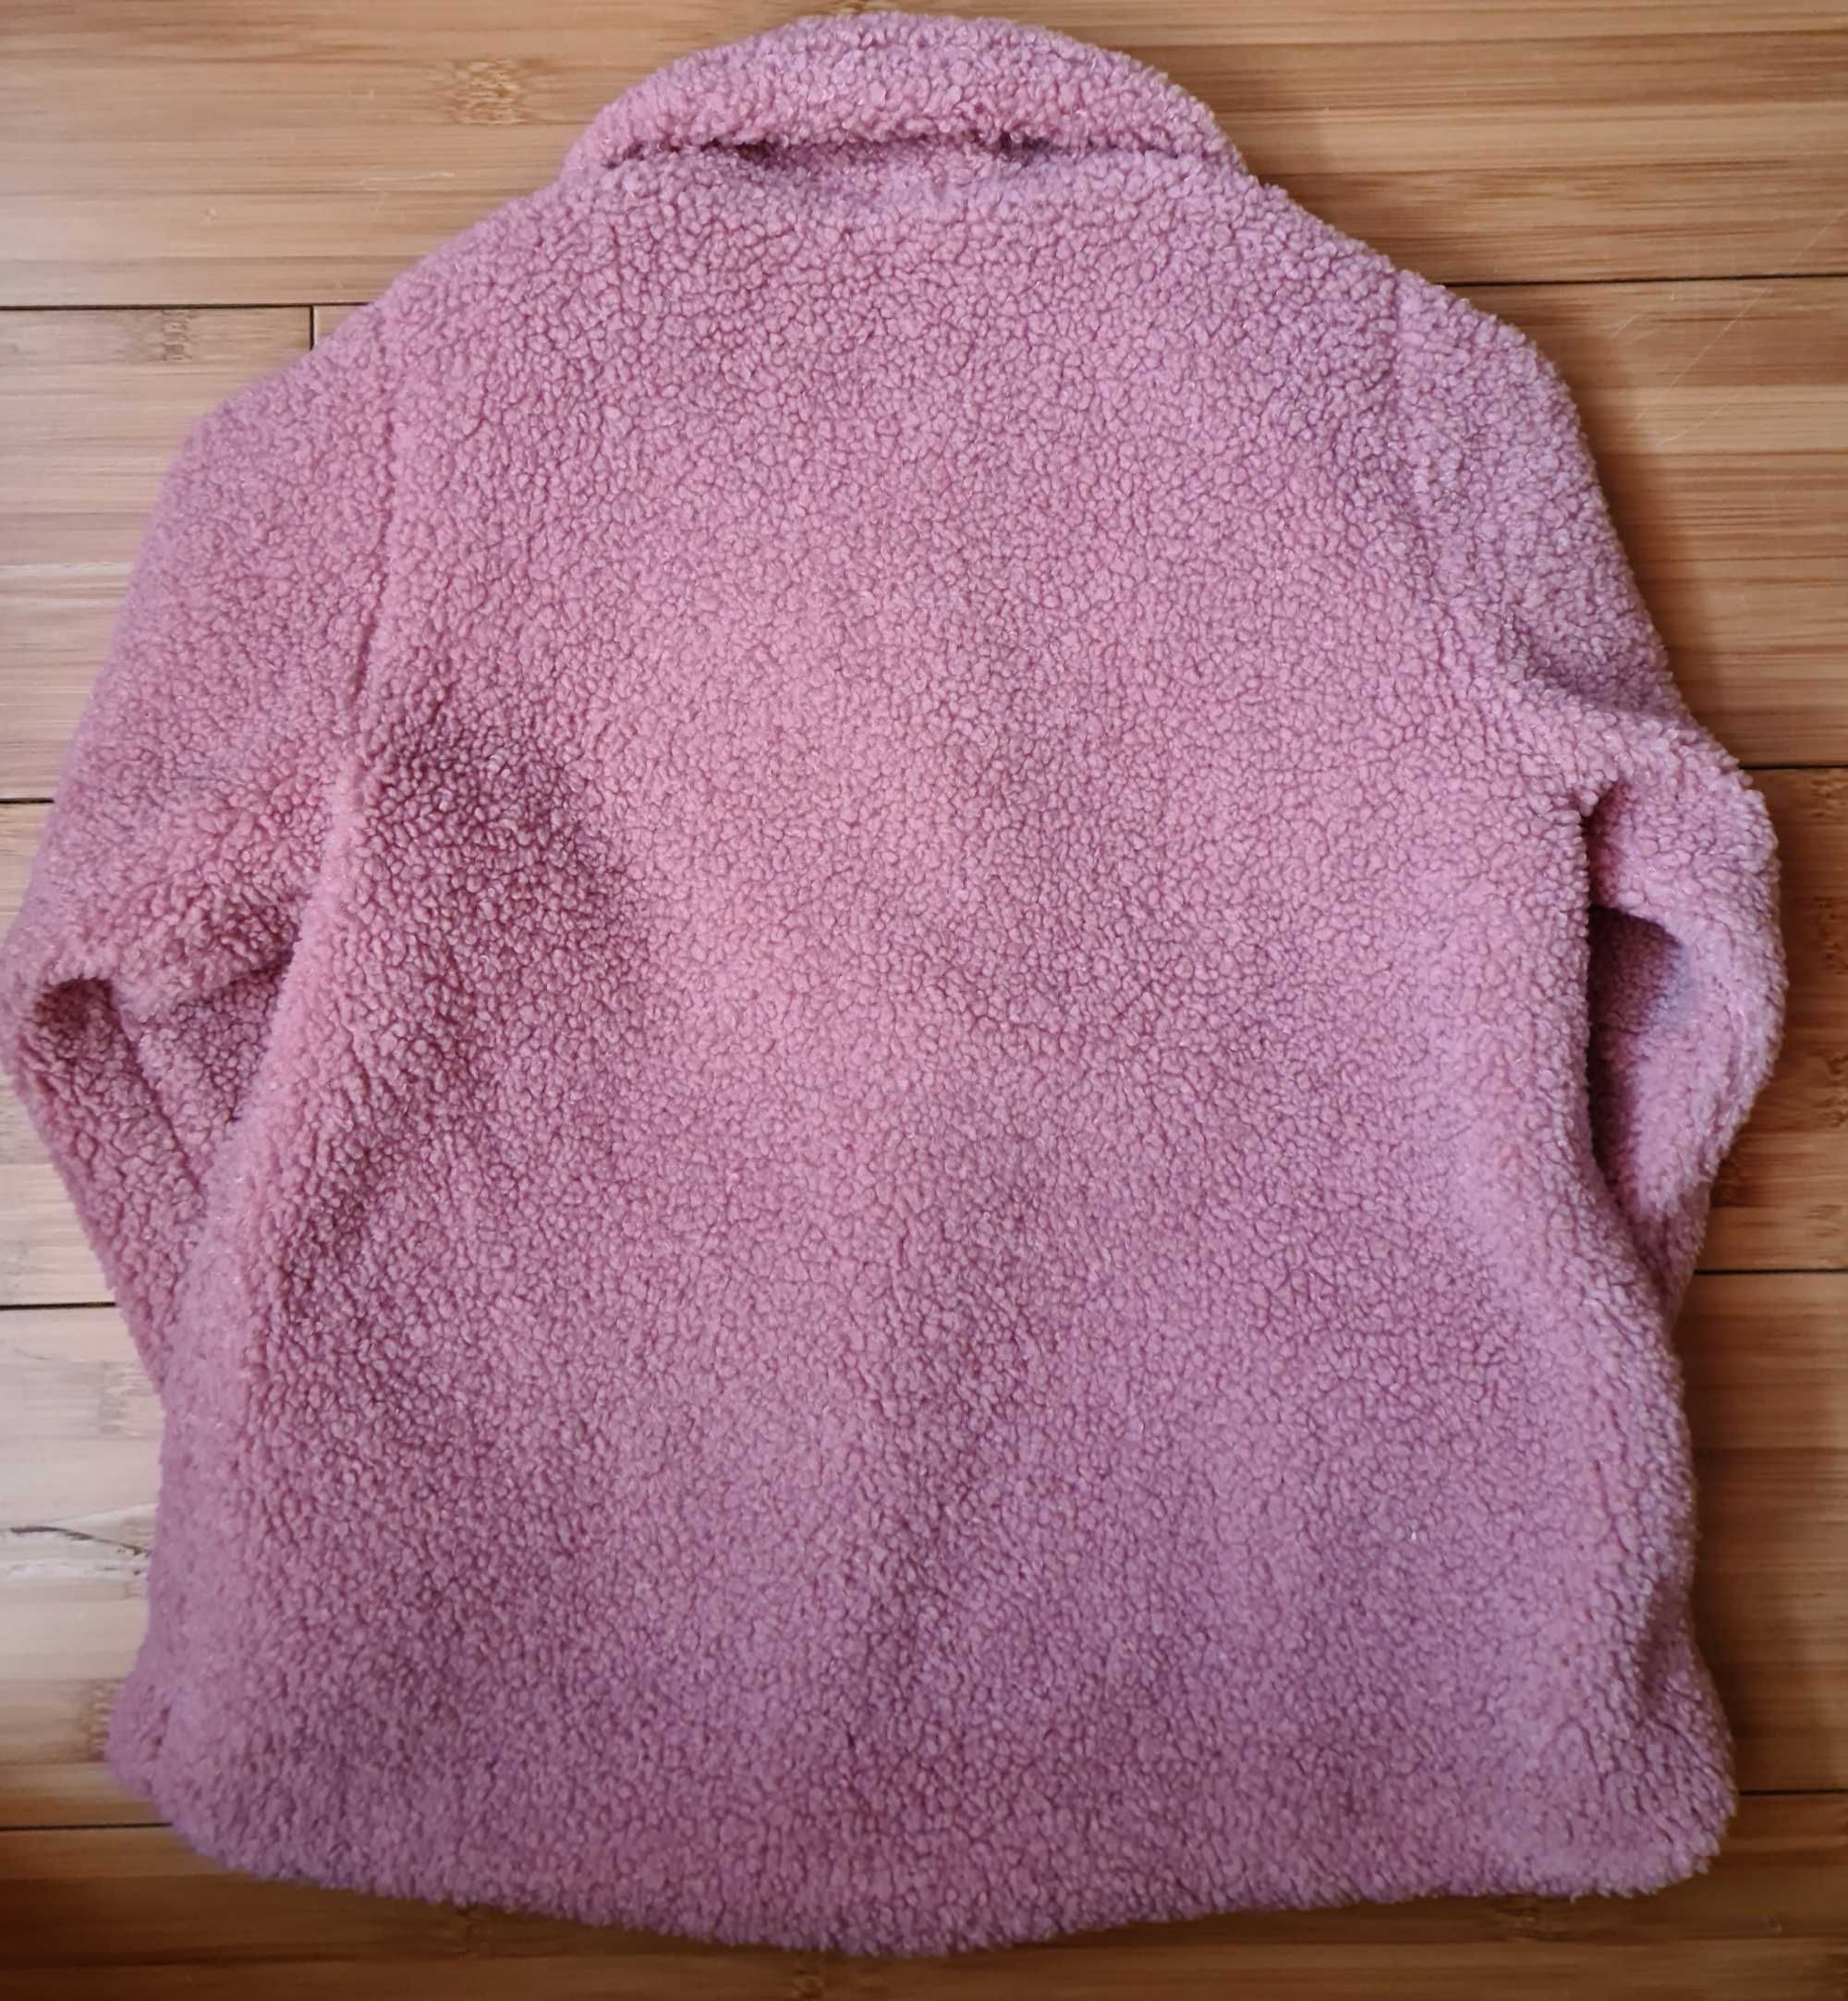 Palton/Cojoc H&M bucle pufos roz pal 1/2 ani fata nou fara eticheta